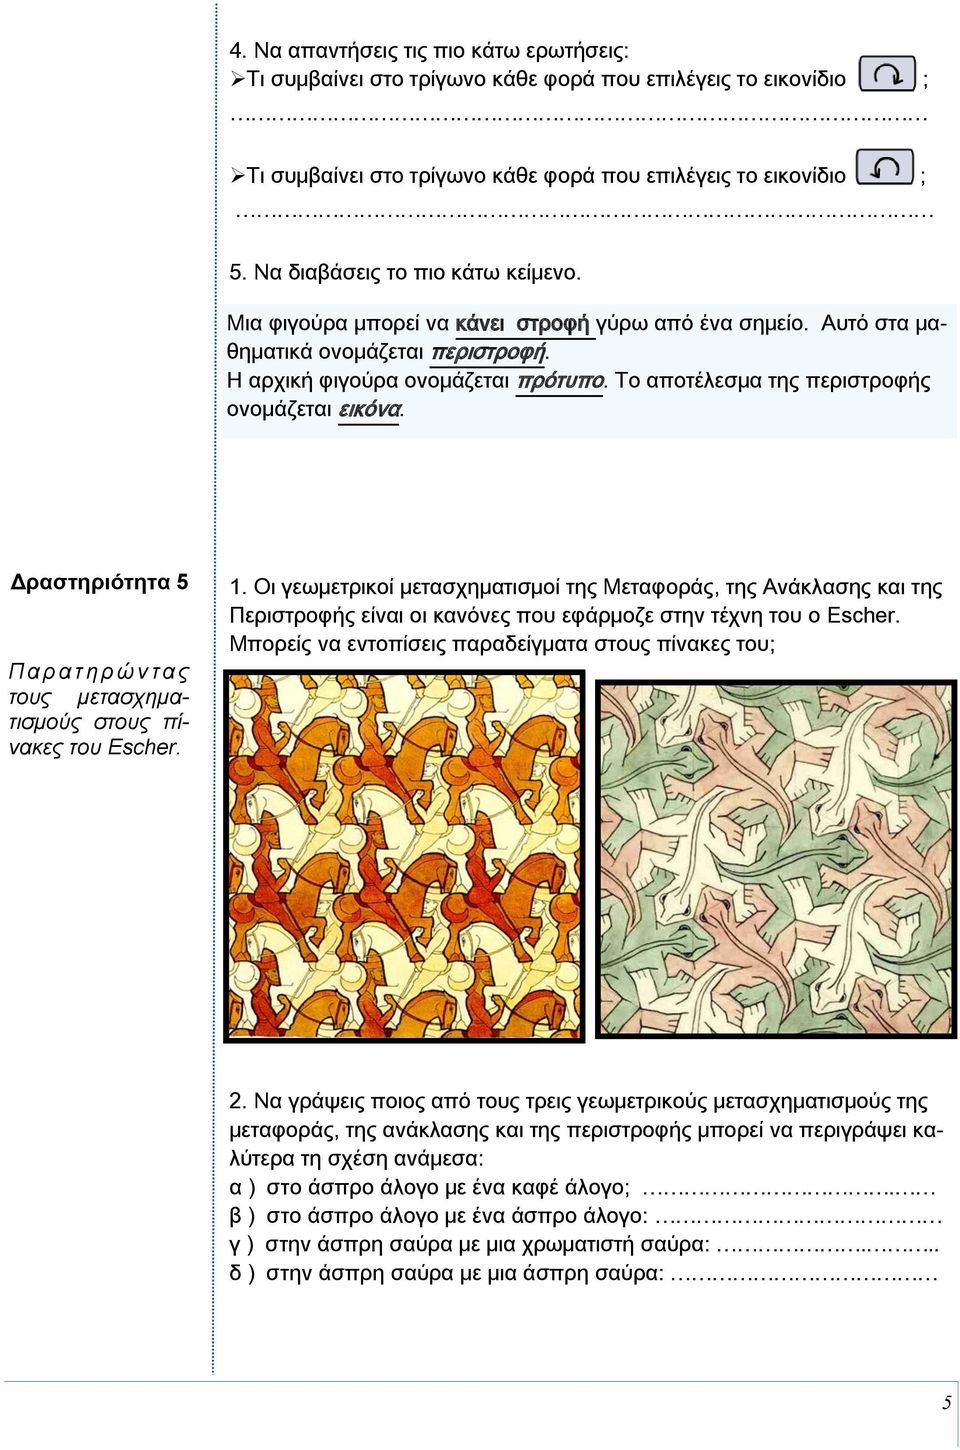 Οι γεωμετρικοί μετασχηματισμοί της Μεταφοράς, της Ανάκλασης και της Περιστροφής είναι οι κανόνες που εφάρμοζε στην τέχνη του ο Escher. Μπορείς να εντοπίσεις παραδείγματα στους πίνακες του; 2.